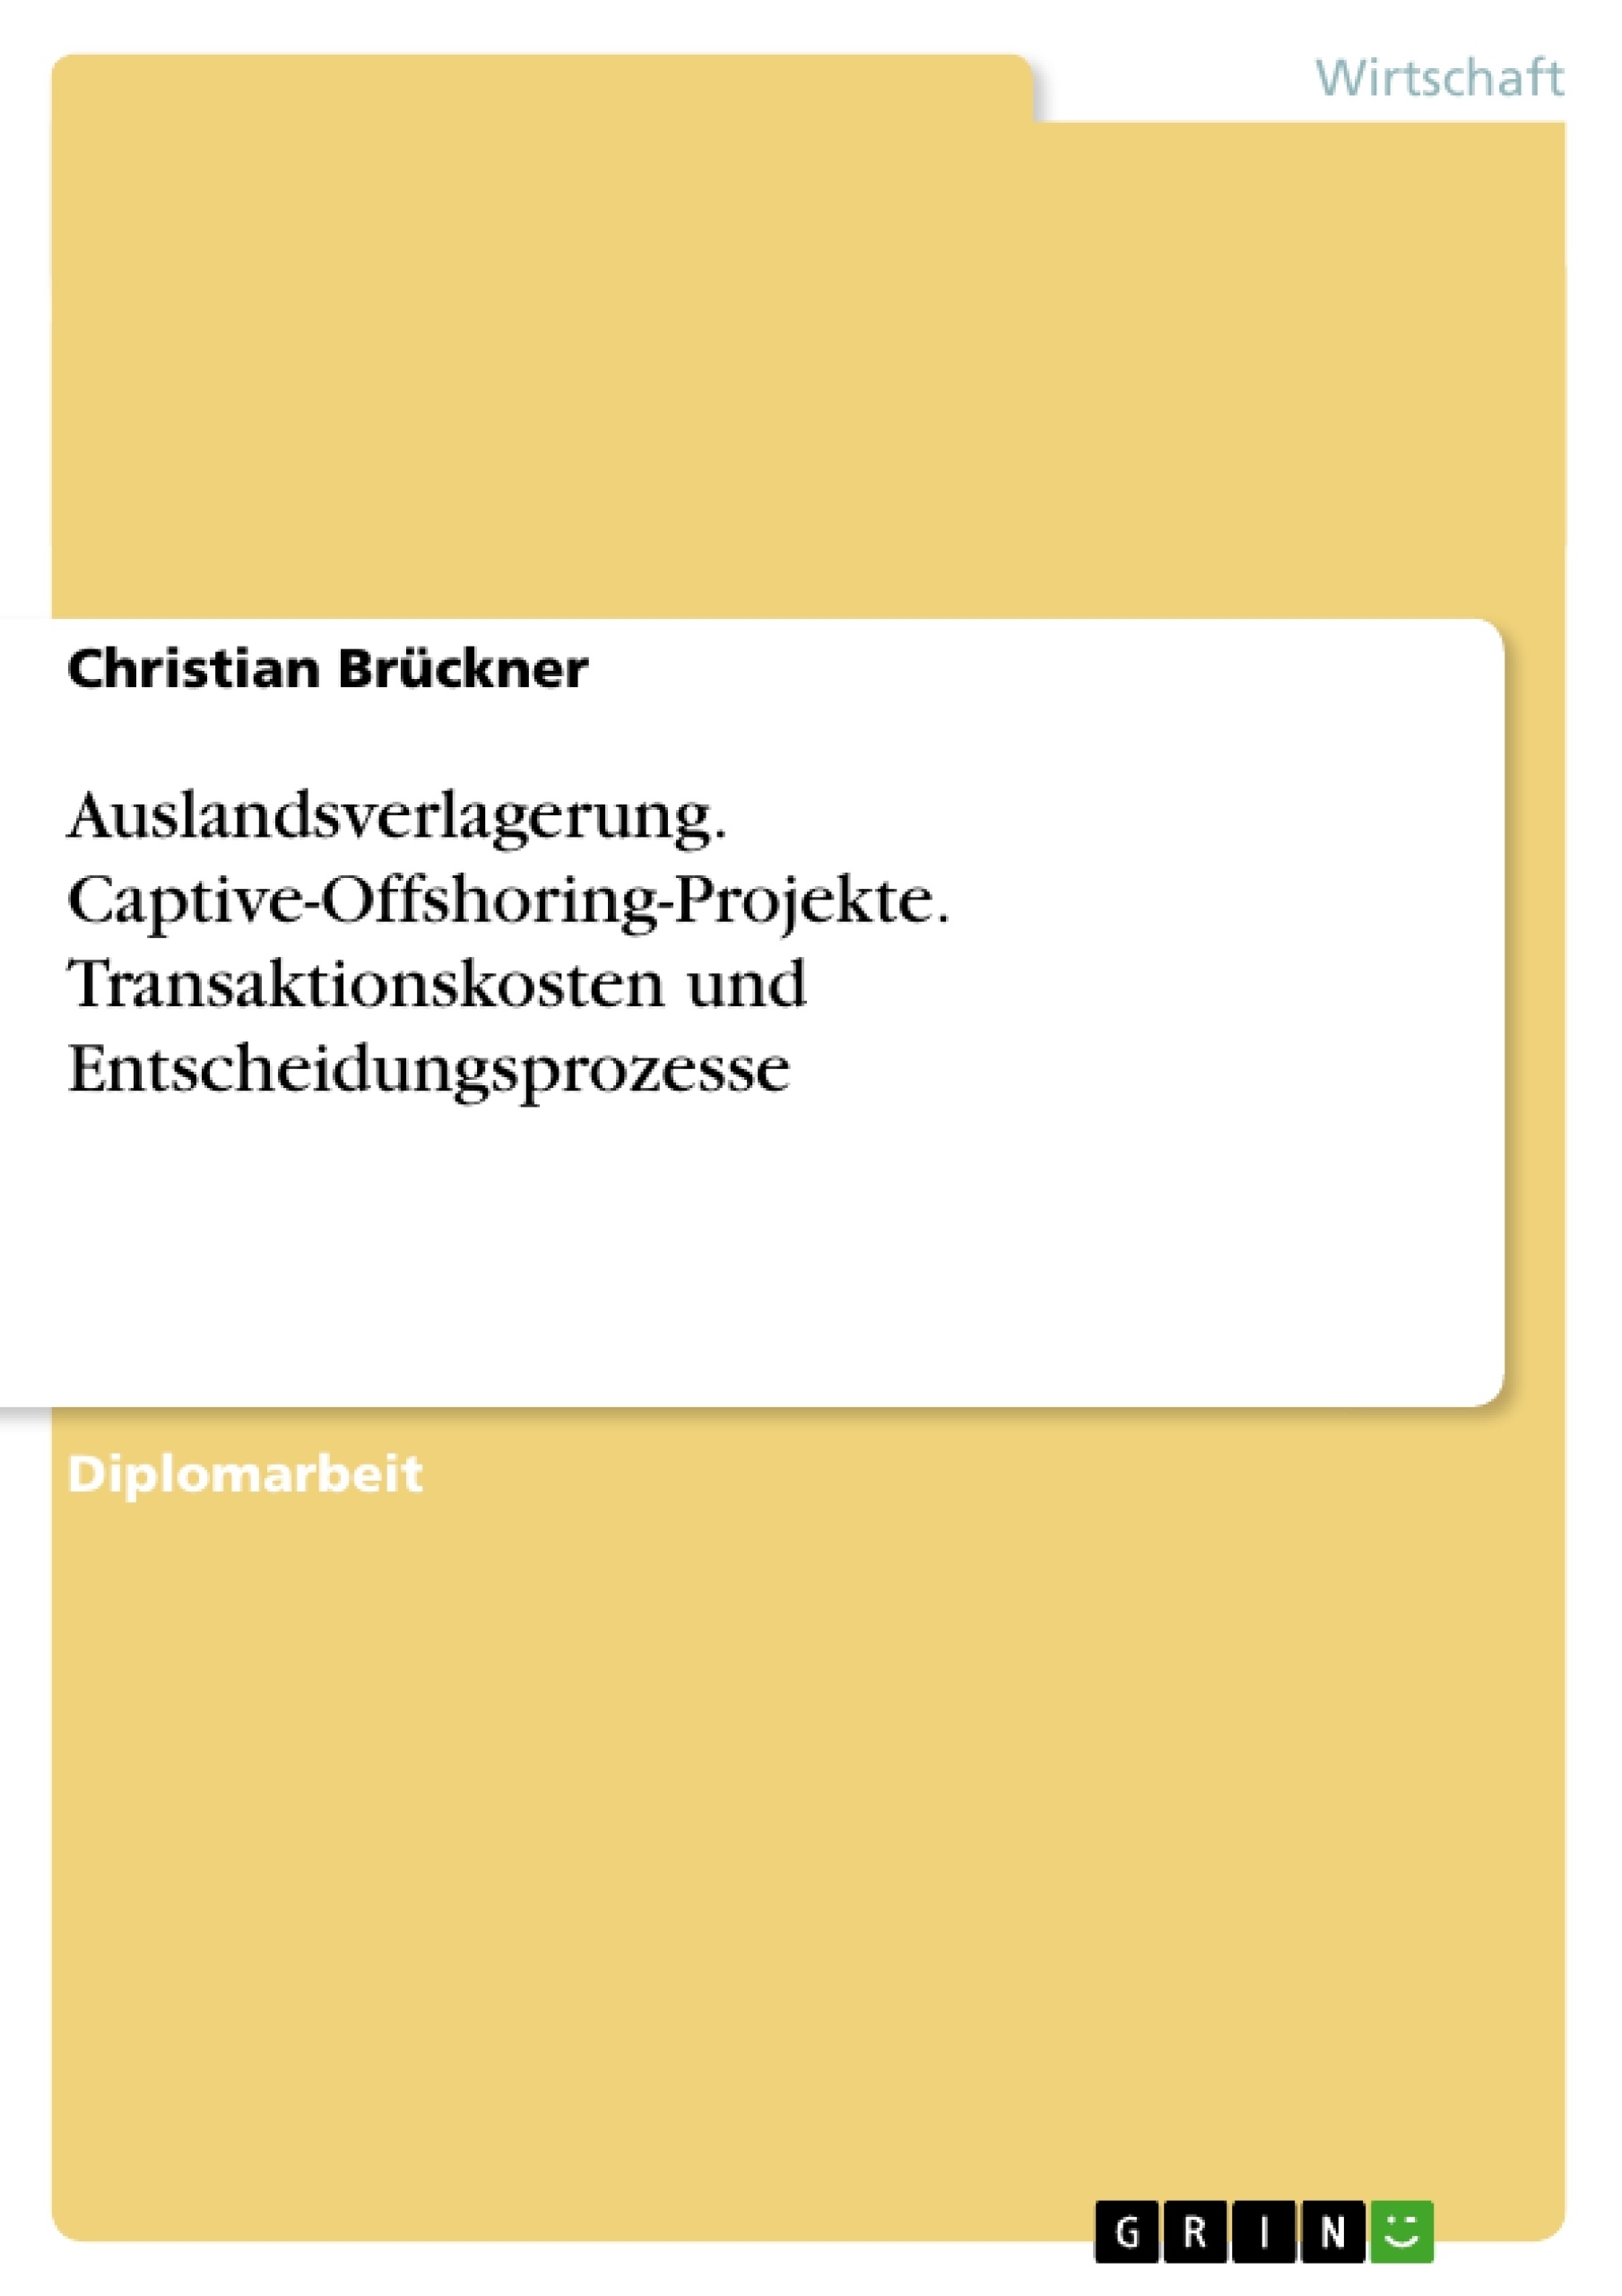 Title: Auslandsverlagerung. Captive-Offshoring-Projekte. Transaktionskosten und Entscheidungsprozesse